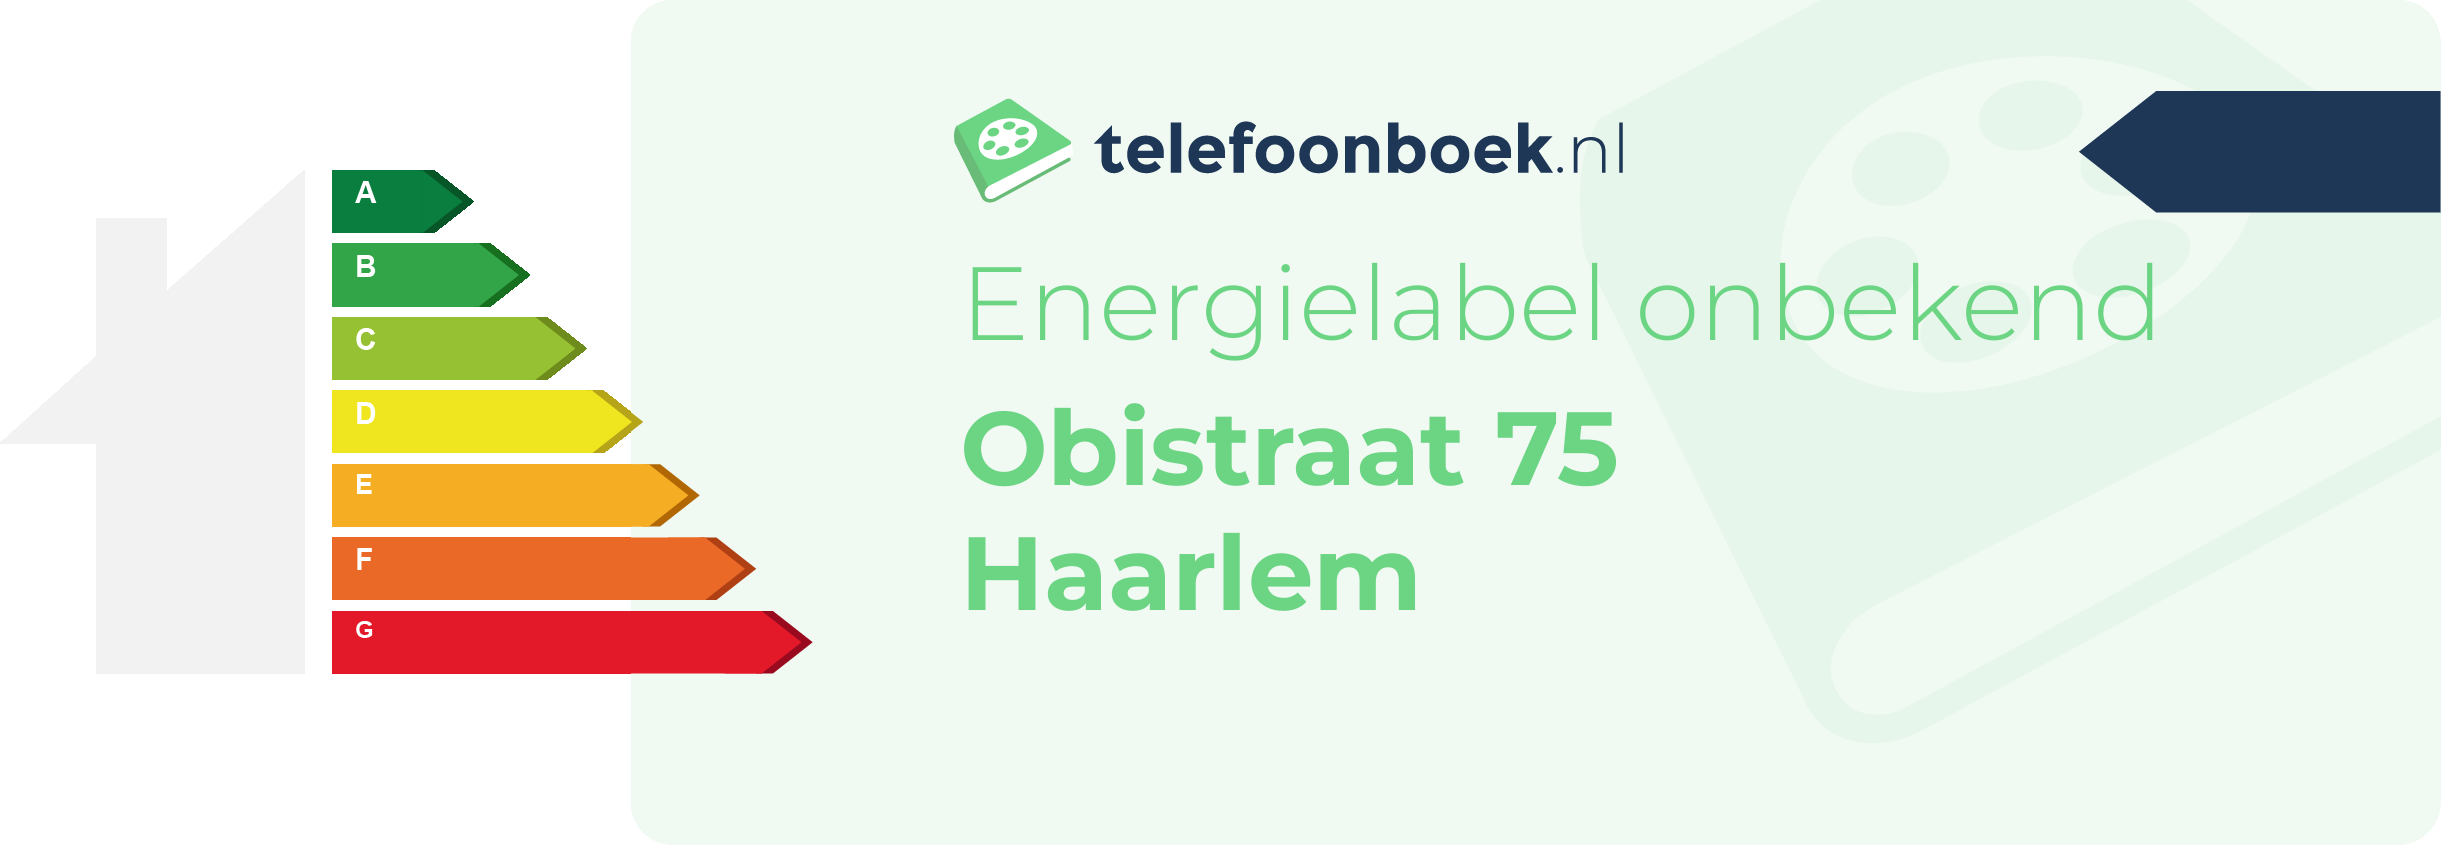 Energielabel Obistraat 75 Haarlem